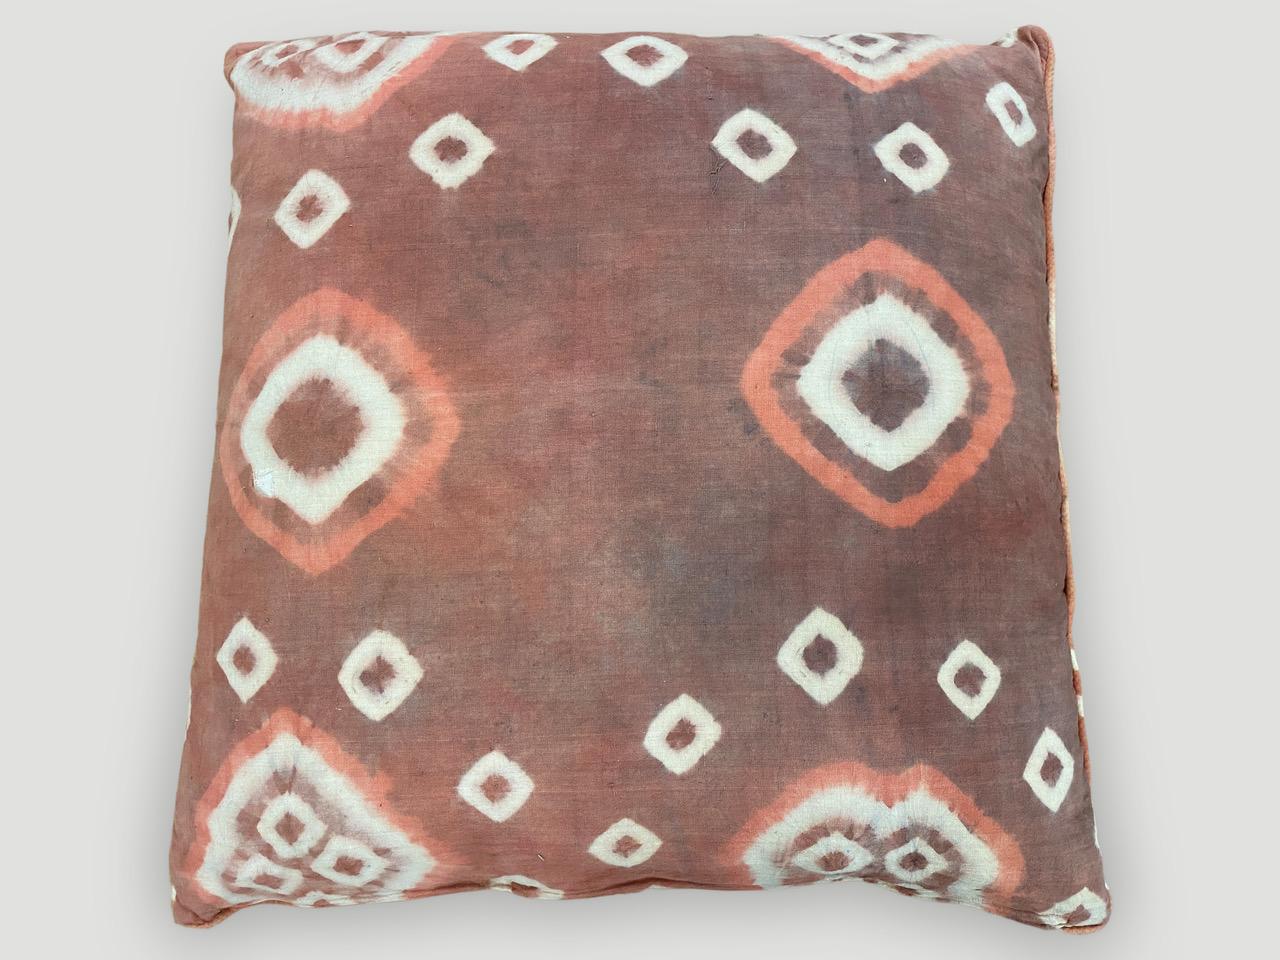 De magnifiques textiles anciens trouvés à Toraja Land, dans le sud de Sulawesi, sont transformés en oreillers avec des passepoils et des fermetures éclair dissimulées. Double dos avec de superbes couleurs contrastées. Inserts inclus. Nous avons une